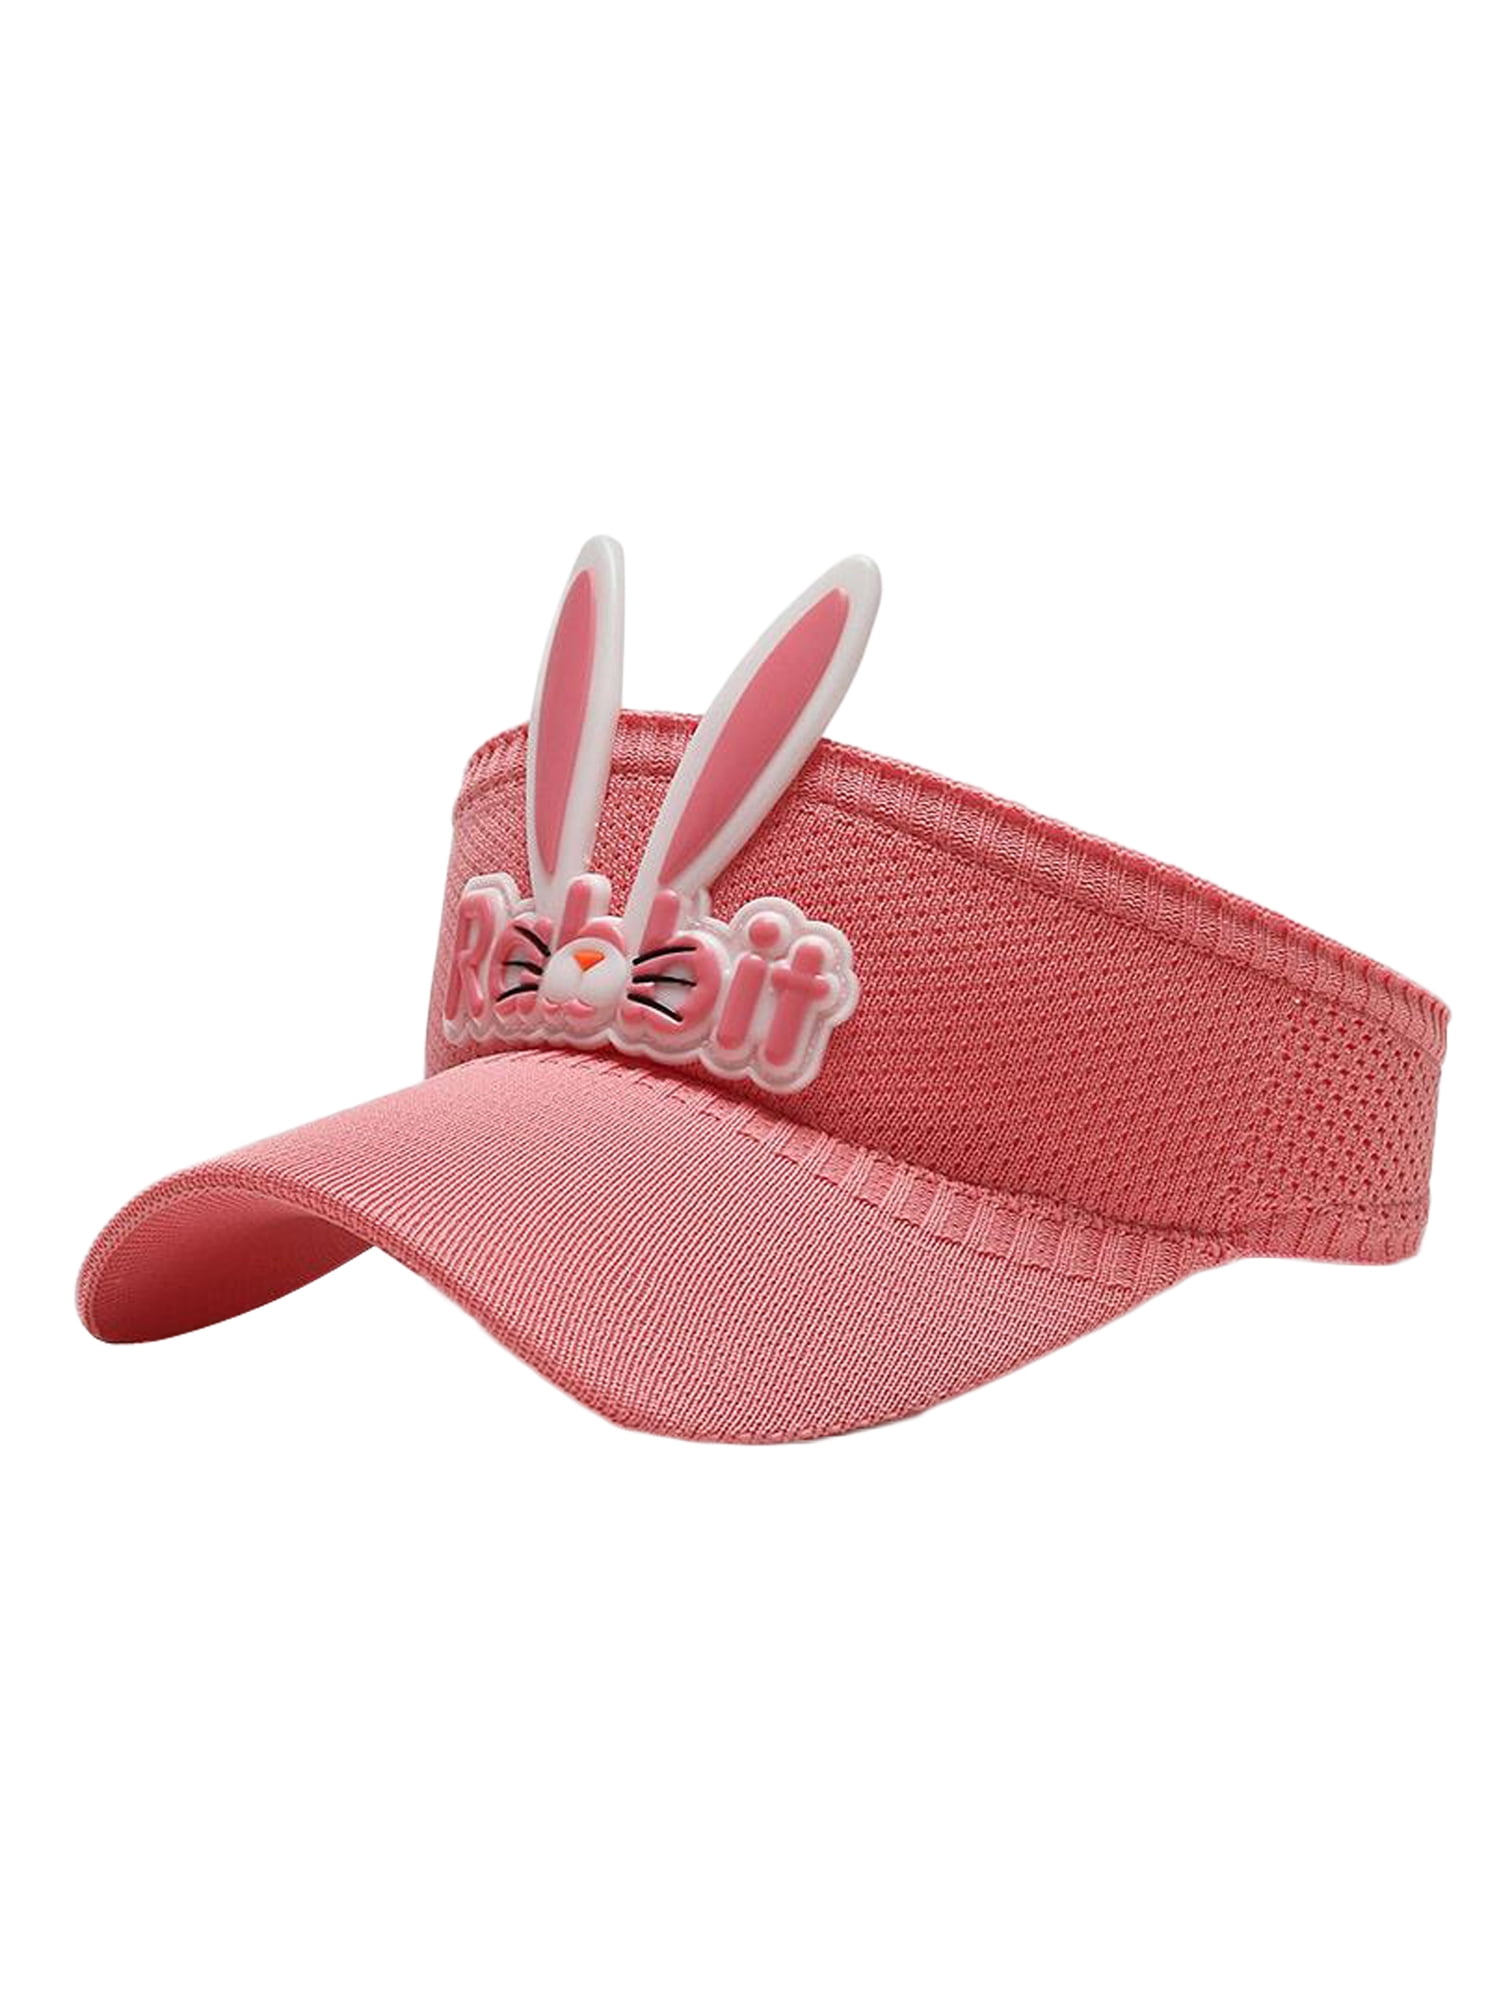 Toddler Kids Boys Girls Folding Visor Cap Bunny Ears Weave Straw Summer Sun Hats